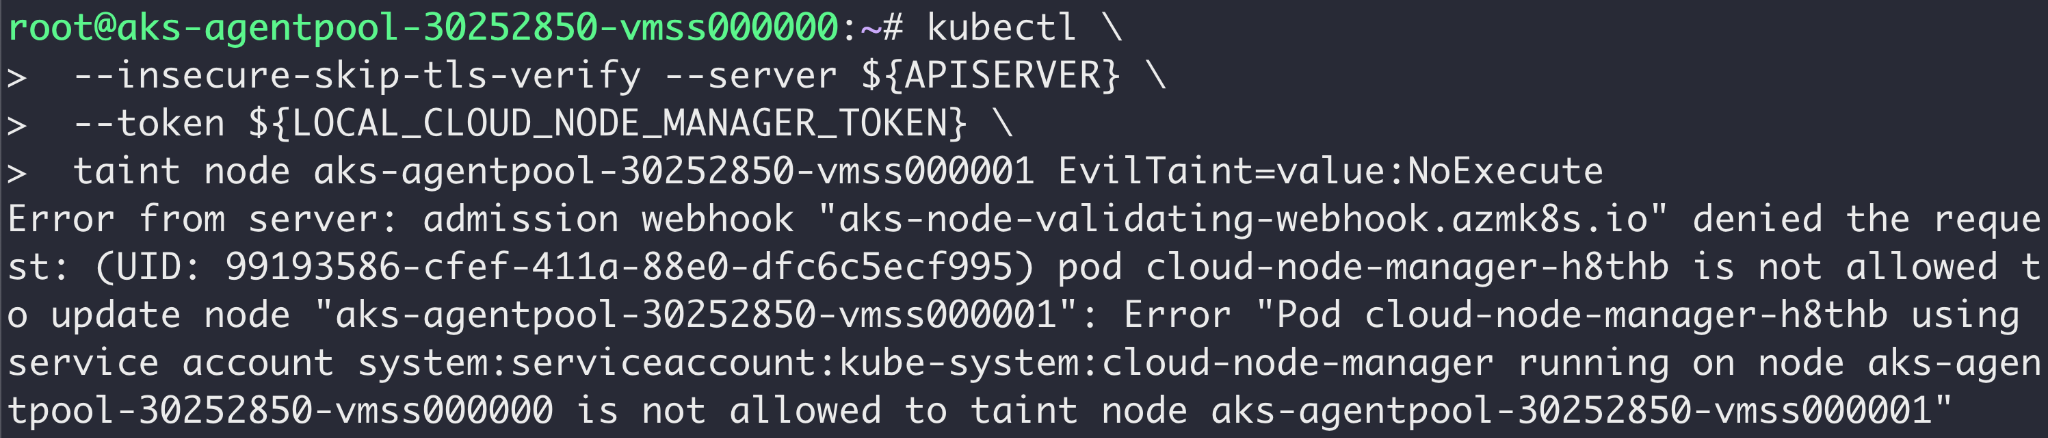 画像5はcloud-node-manager Podのクレデンシャルを悪用しようとする攻撃者の試みを拒否した様子を表すスクリーンショットです。